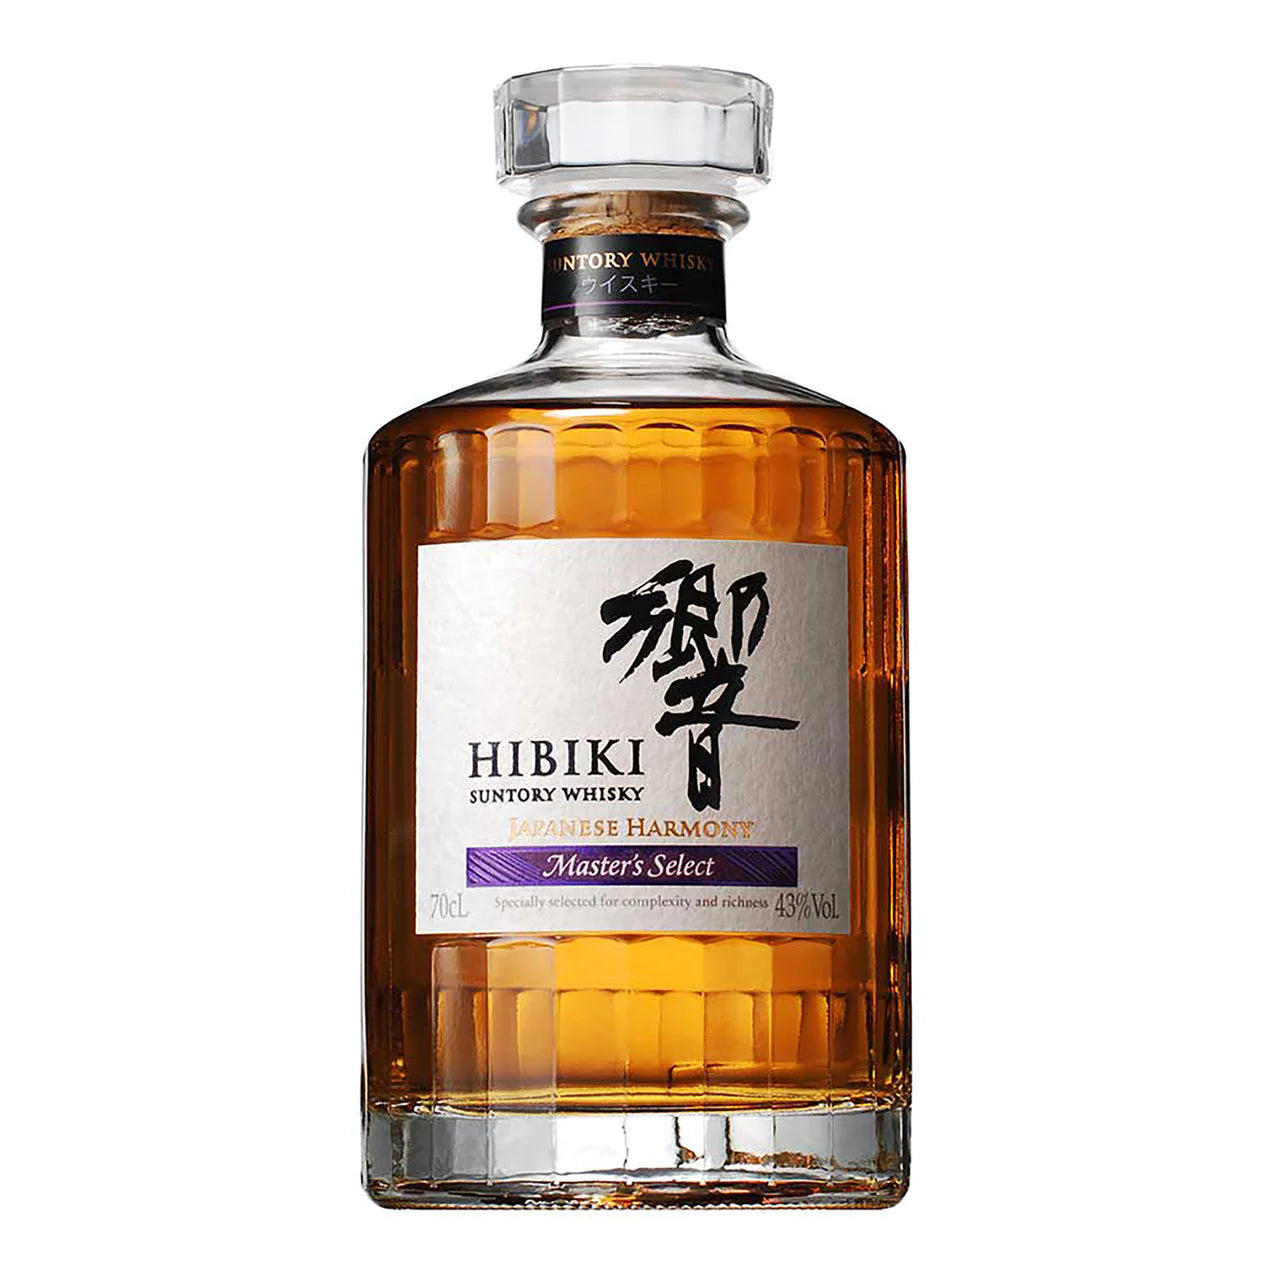 Hibiki Japanese Harmony Master's Select Japanese Whisky 700ml